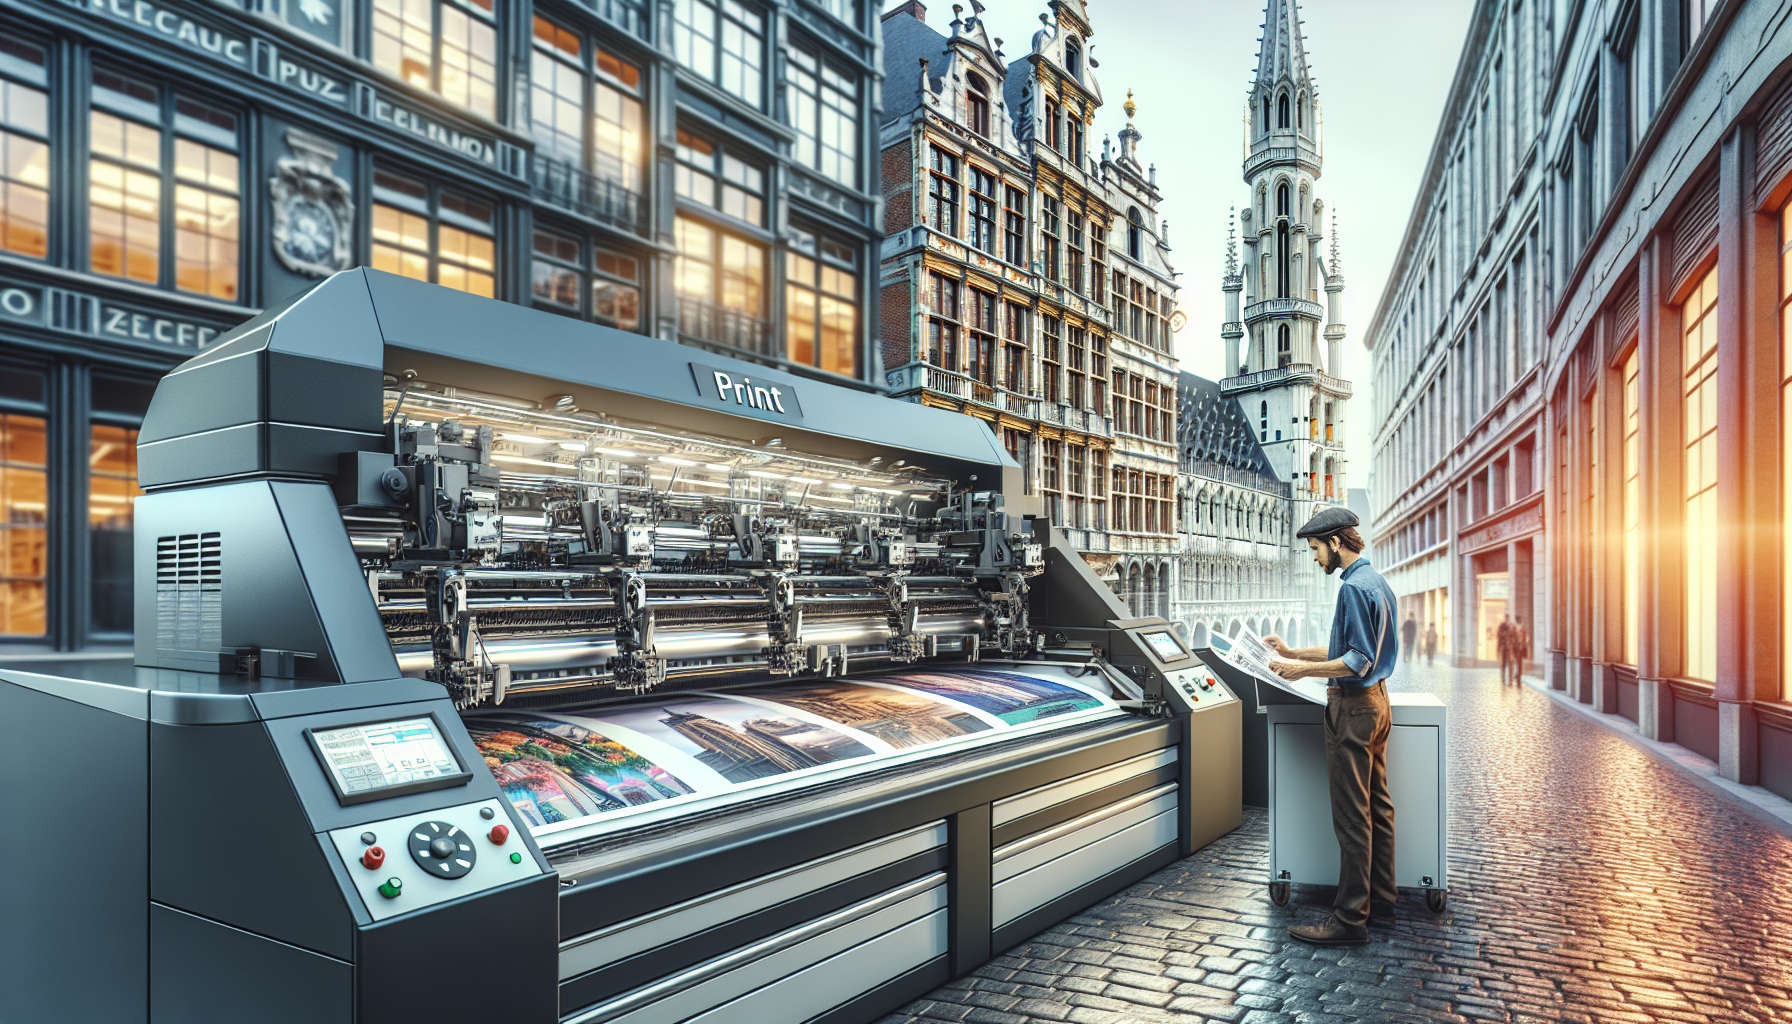 découvrez notre sélection d'imprimantes professionnelles en belgique pour répondre à vos besoins d'impression professionnels.